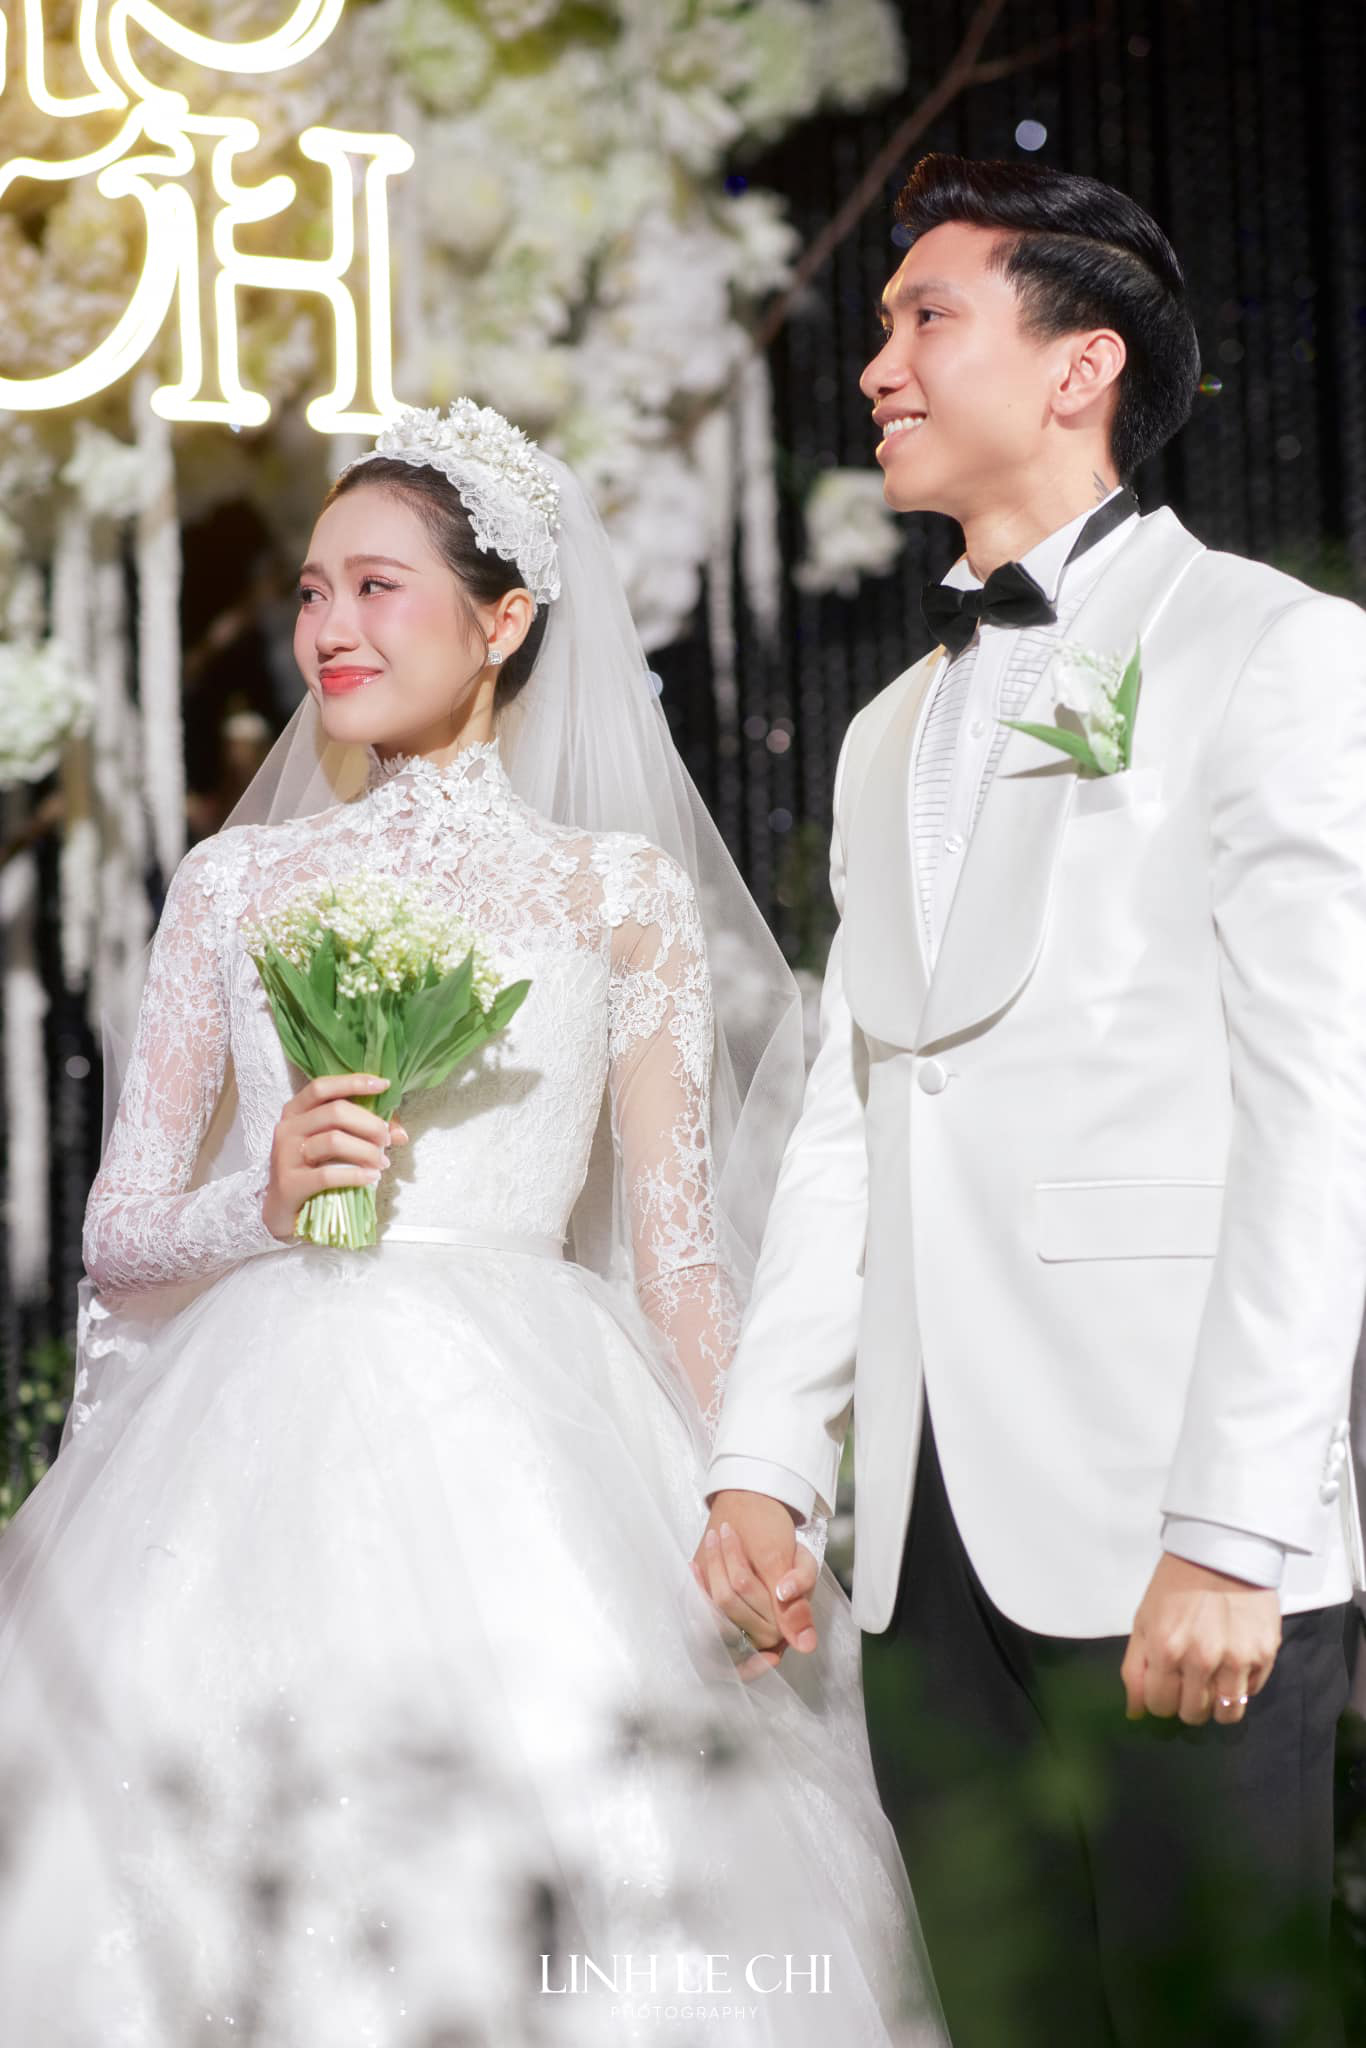 Nhiếp ảnh gia trong vụ lùm xùm ảnh cưới của Quang Hải - Chu Thanh Huyền có 'profile' cực đỉnh là ai? - ảnh 4